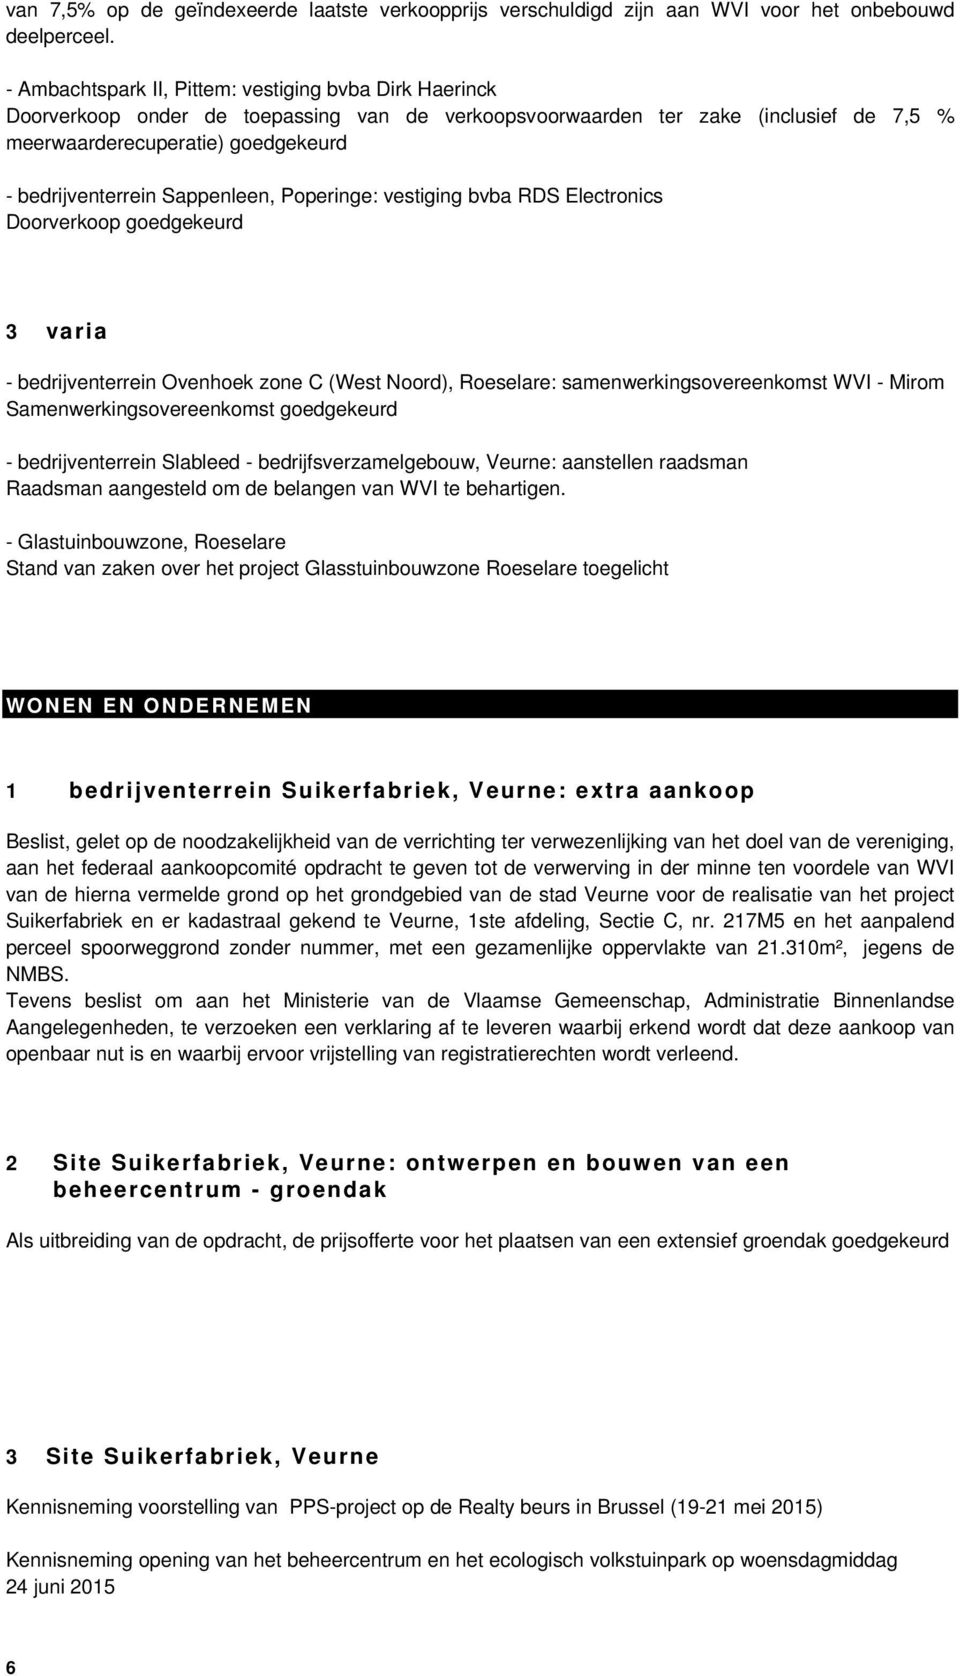 Sappenleen, Poperinge: vestiging bvba RDS Electronics Doorverkoop goedgekeurd 3 varia - bedrijventerrein Ovenhoek zone C (West Noord), Roeselare: samenwerkingsovereenkomst WVI - Mirom